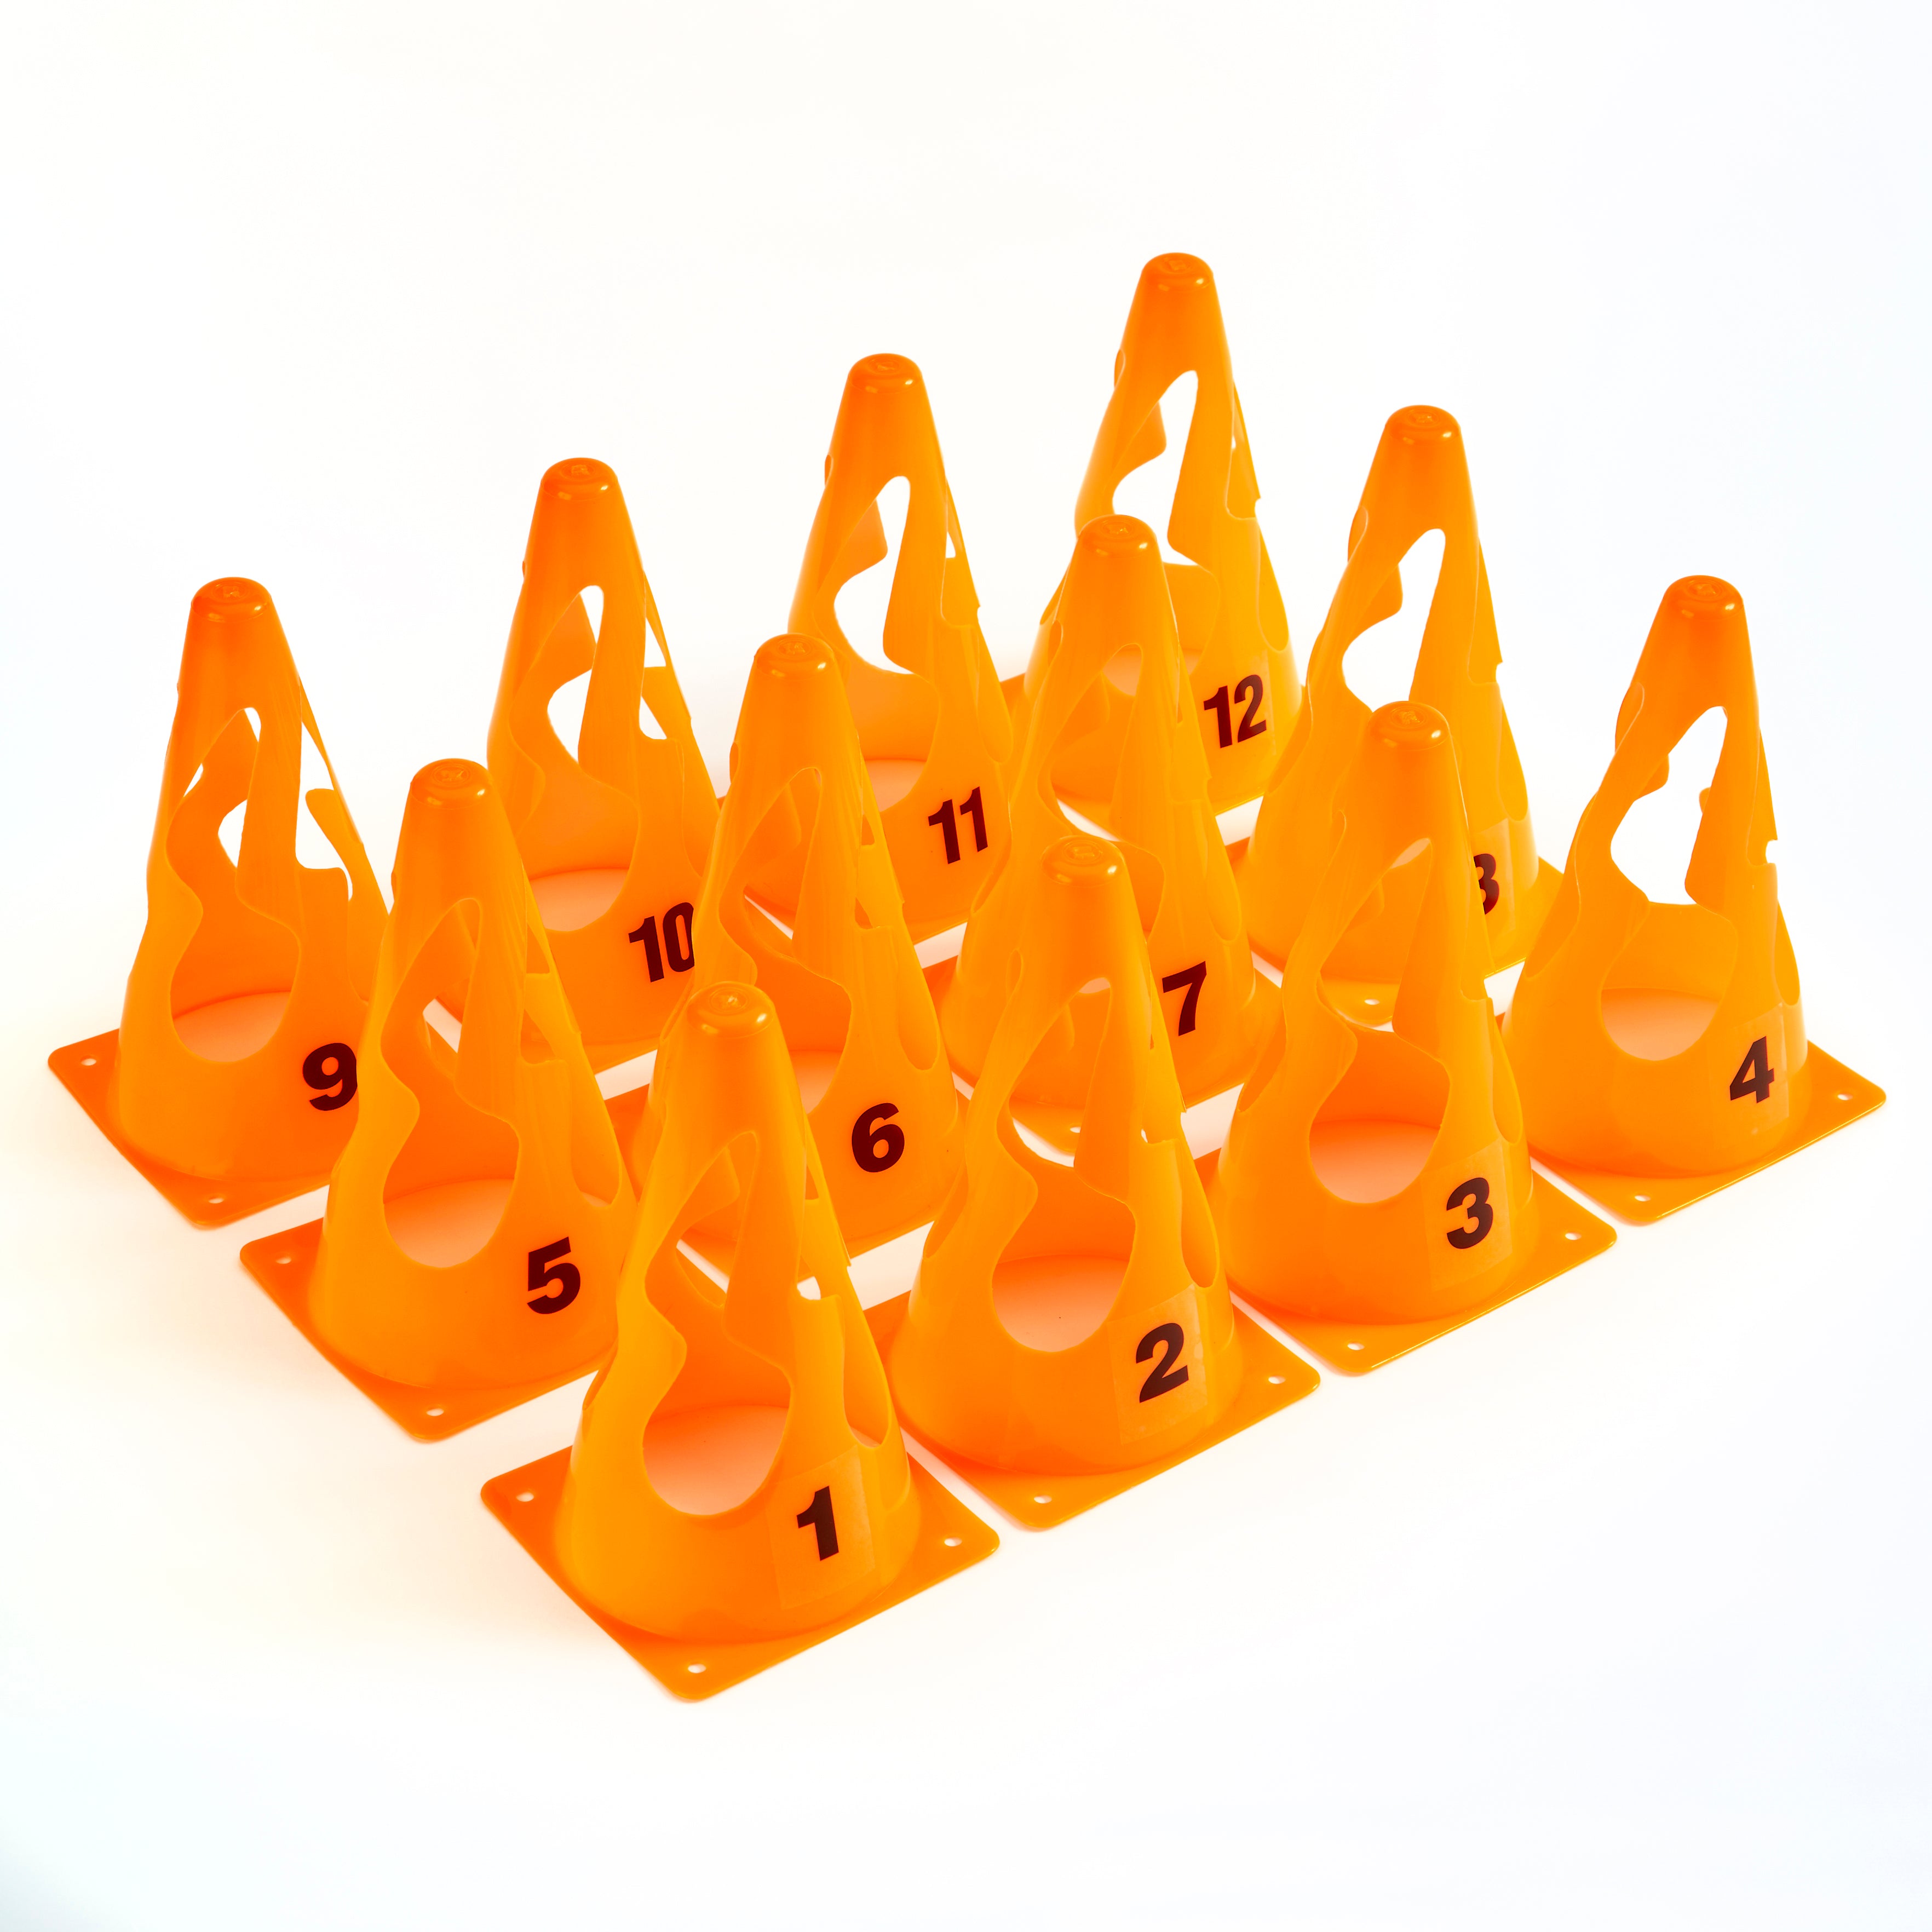 ZSIG Pop UP Cones - a numbered set of 12 cones